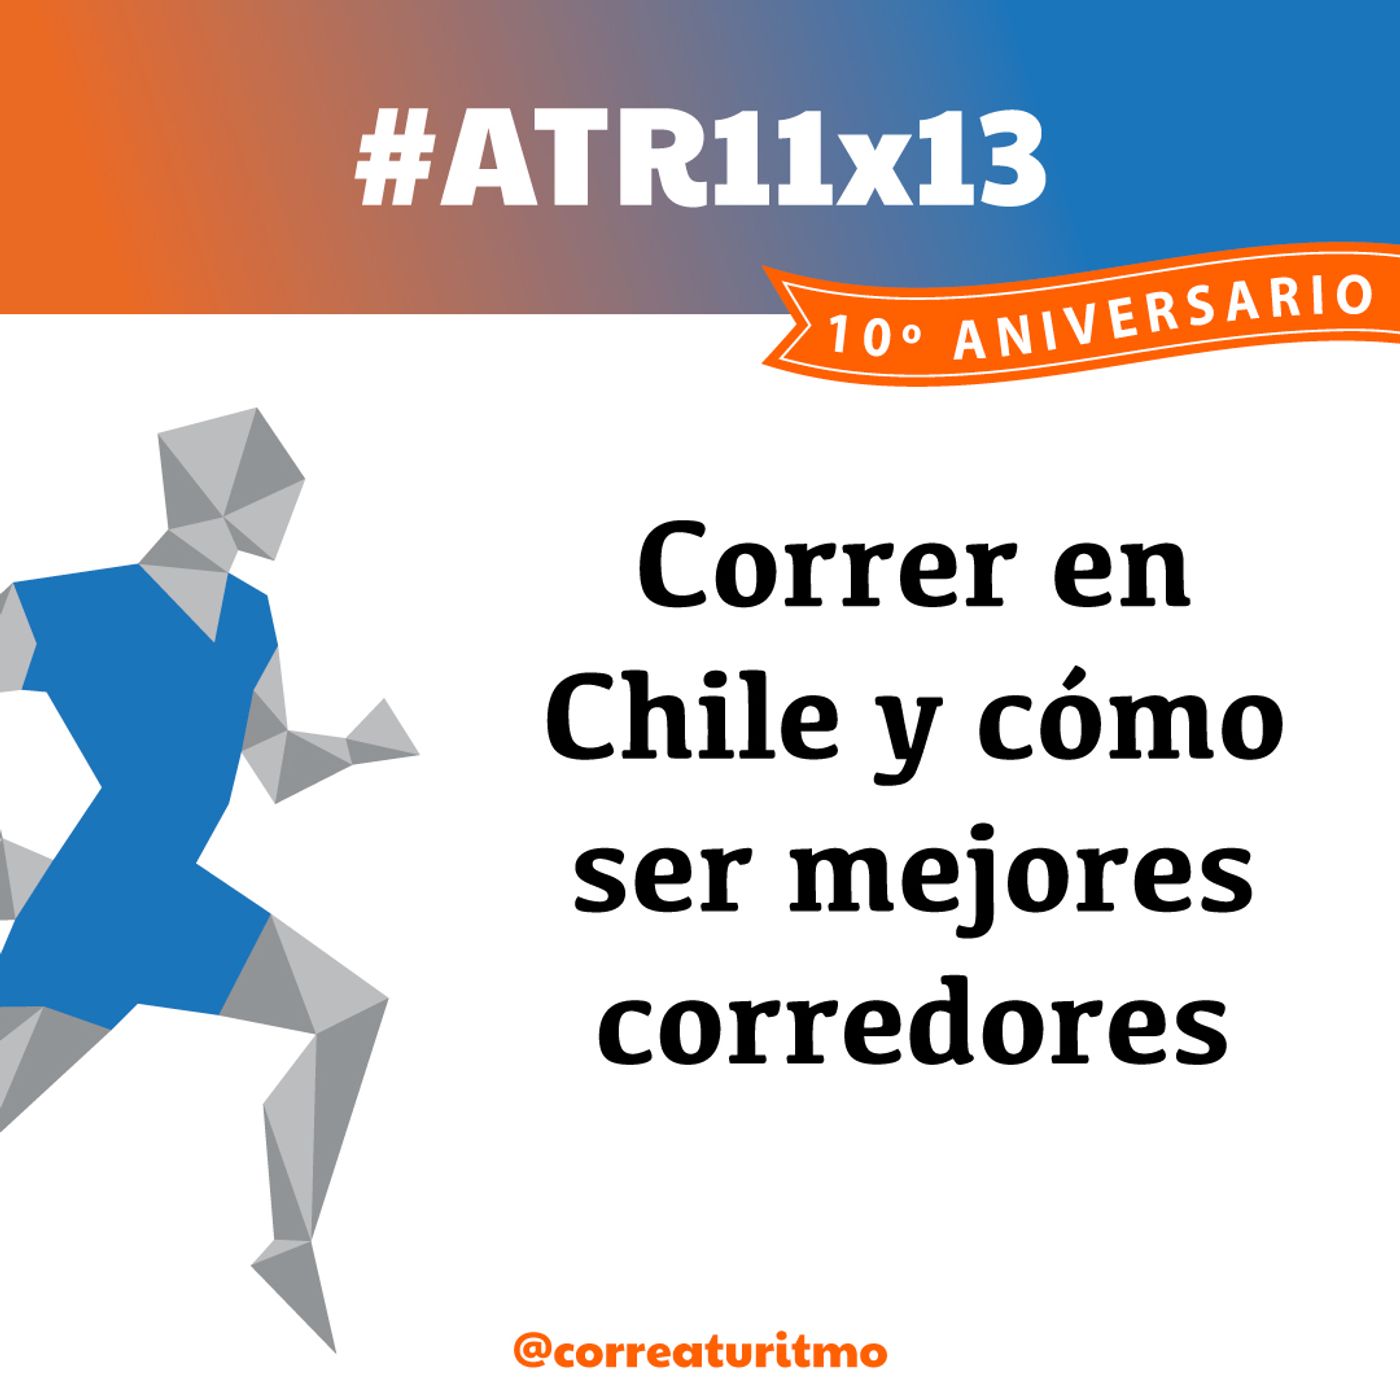 ATR 11x13 - Correr en Chile y cómo ser mejores corredores